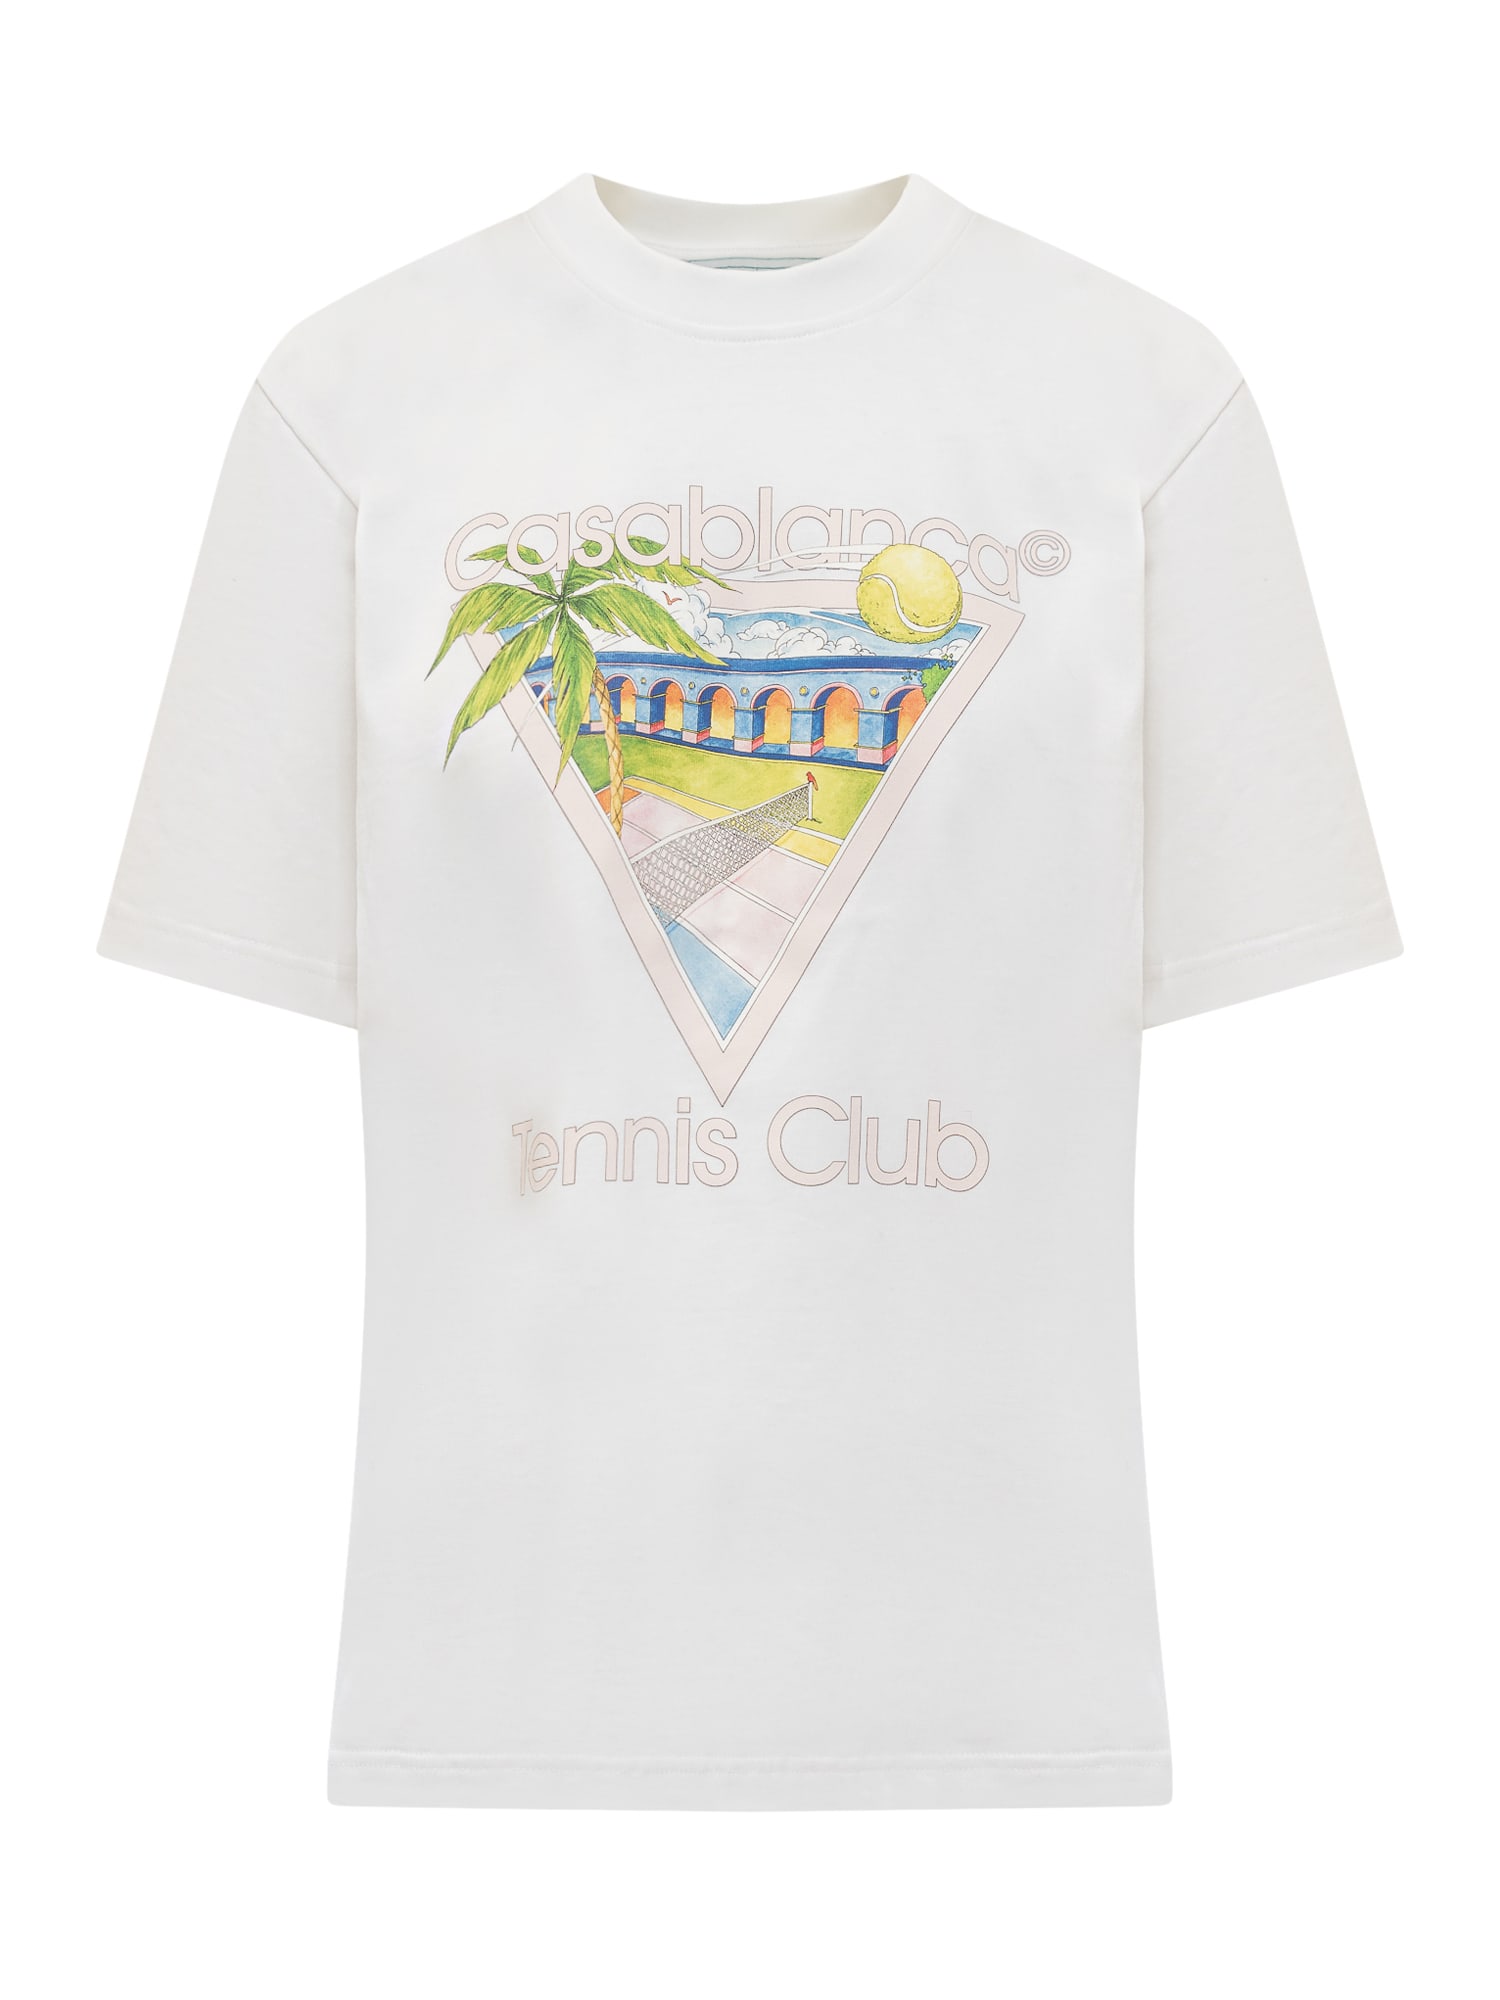 Casablanca Tennis Club T-shirt